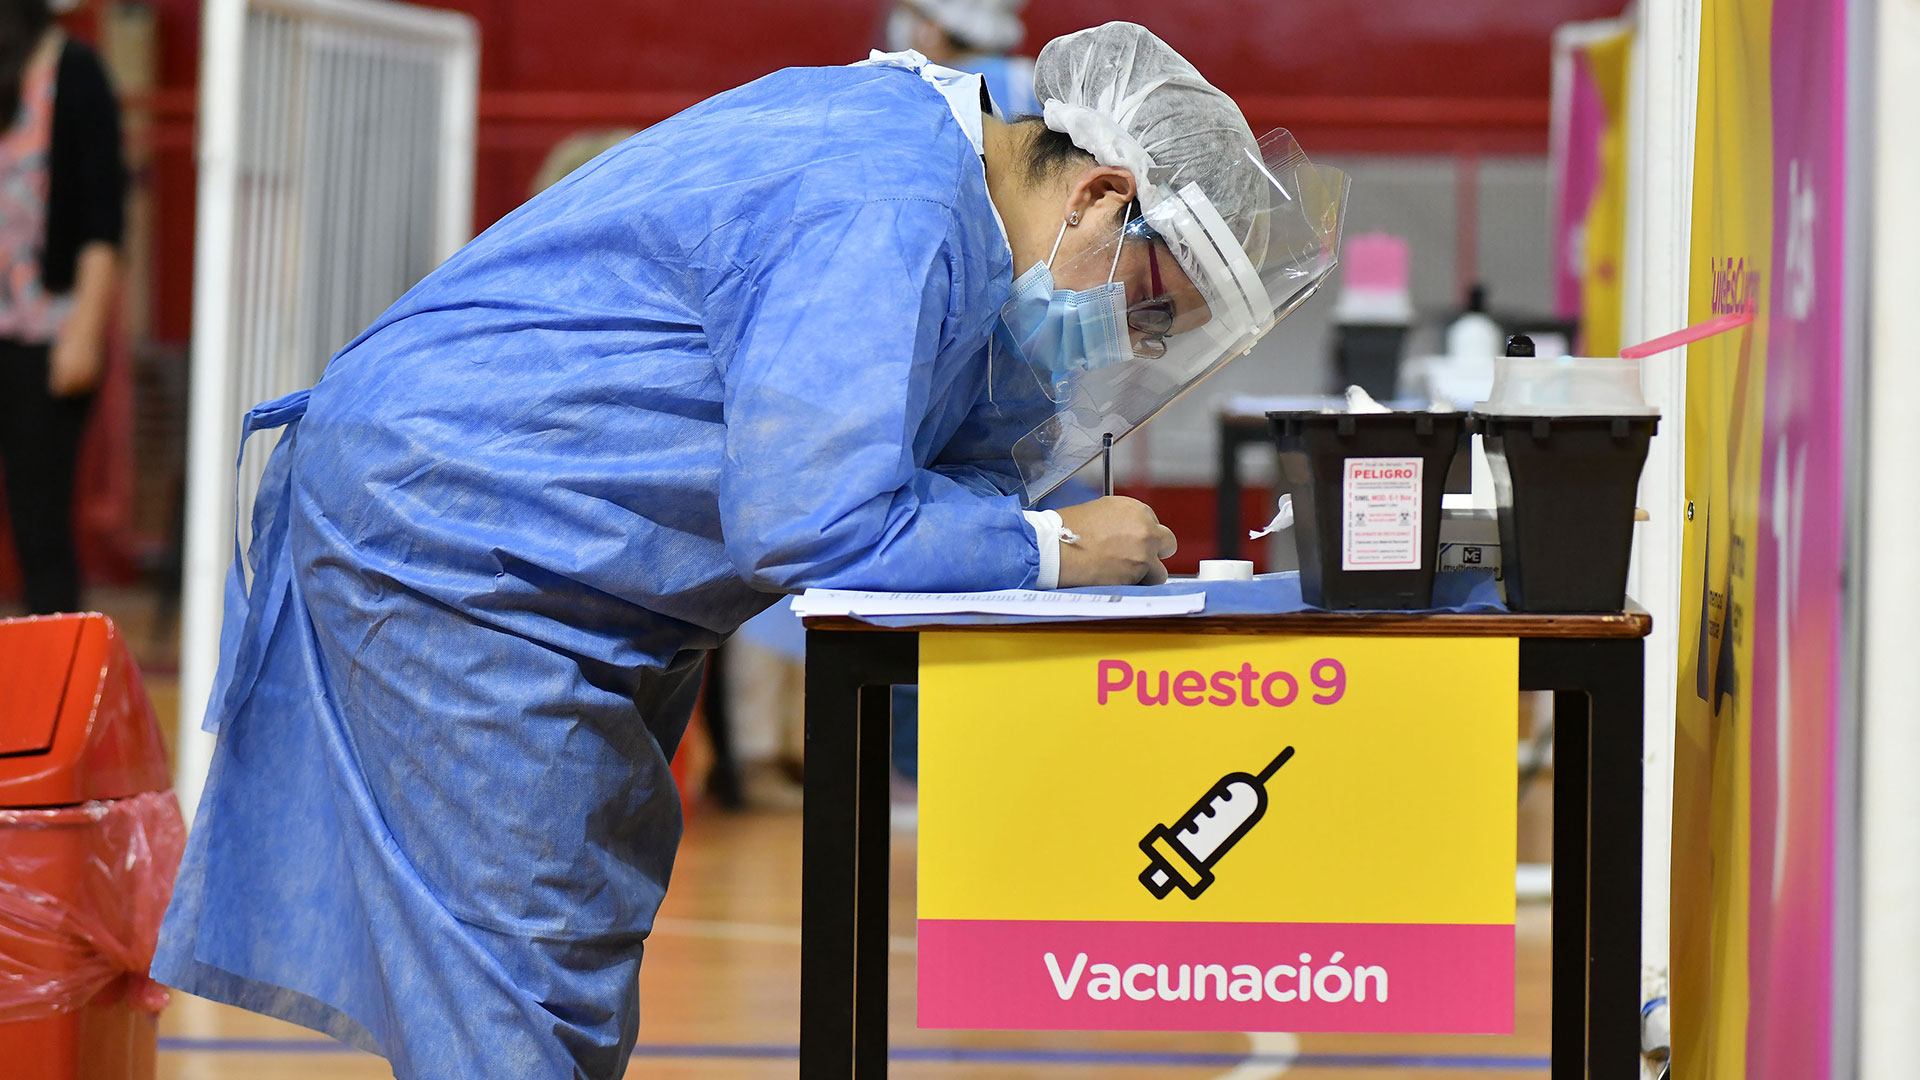 Un 1.1% de los argentinos, 498 mil personas, están vacunadas de forma completa (dos dosis) contra el COVID-19 mientras que en el caso chileno la cifra corresponde a 13.1%, 2.5 millones (Foto NA: 
JUAN VARGAS)